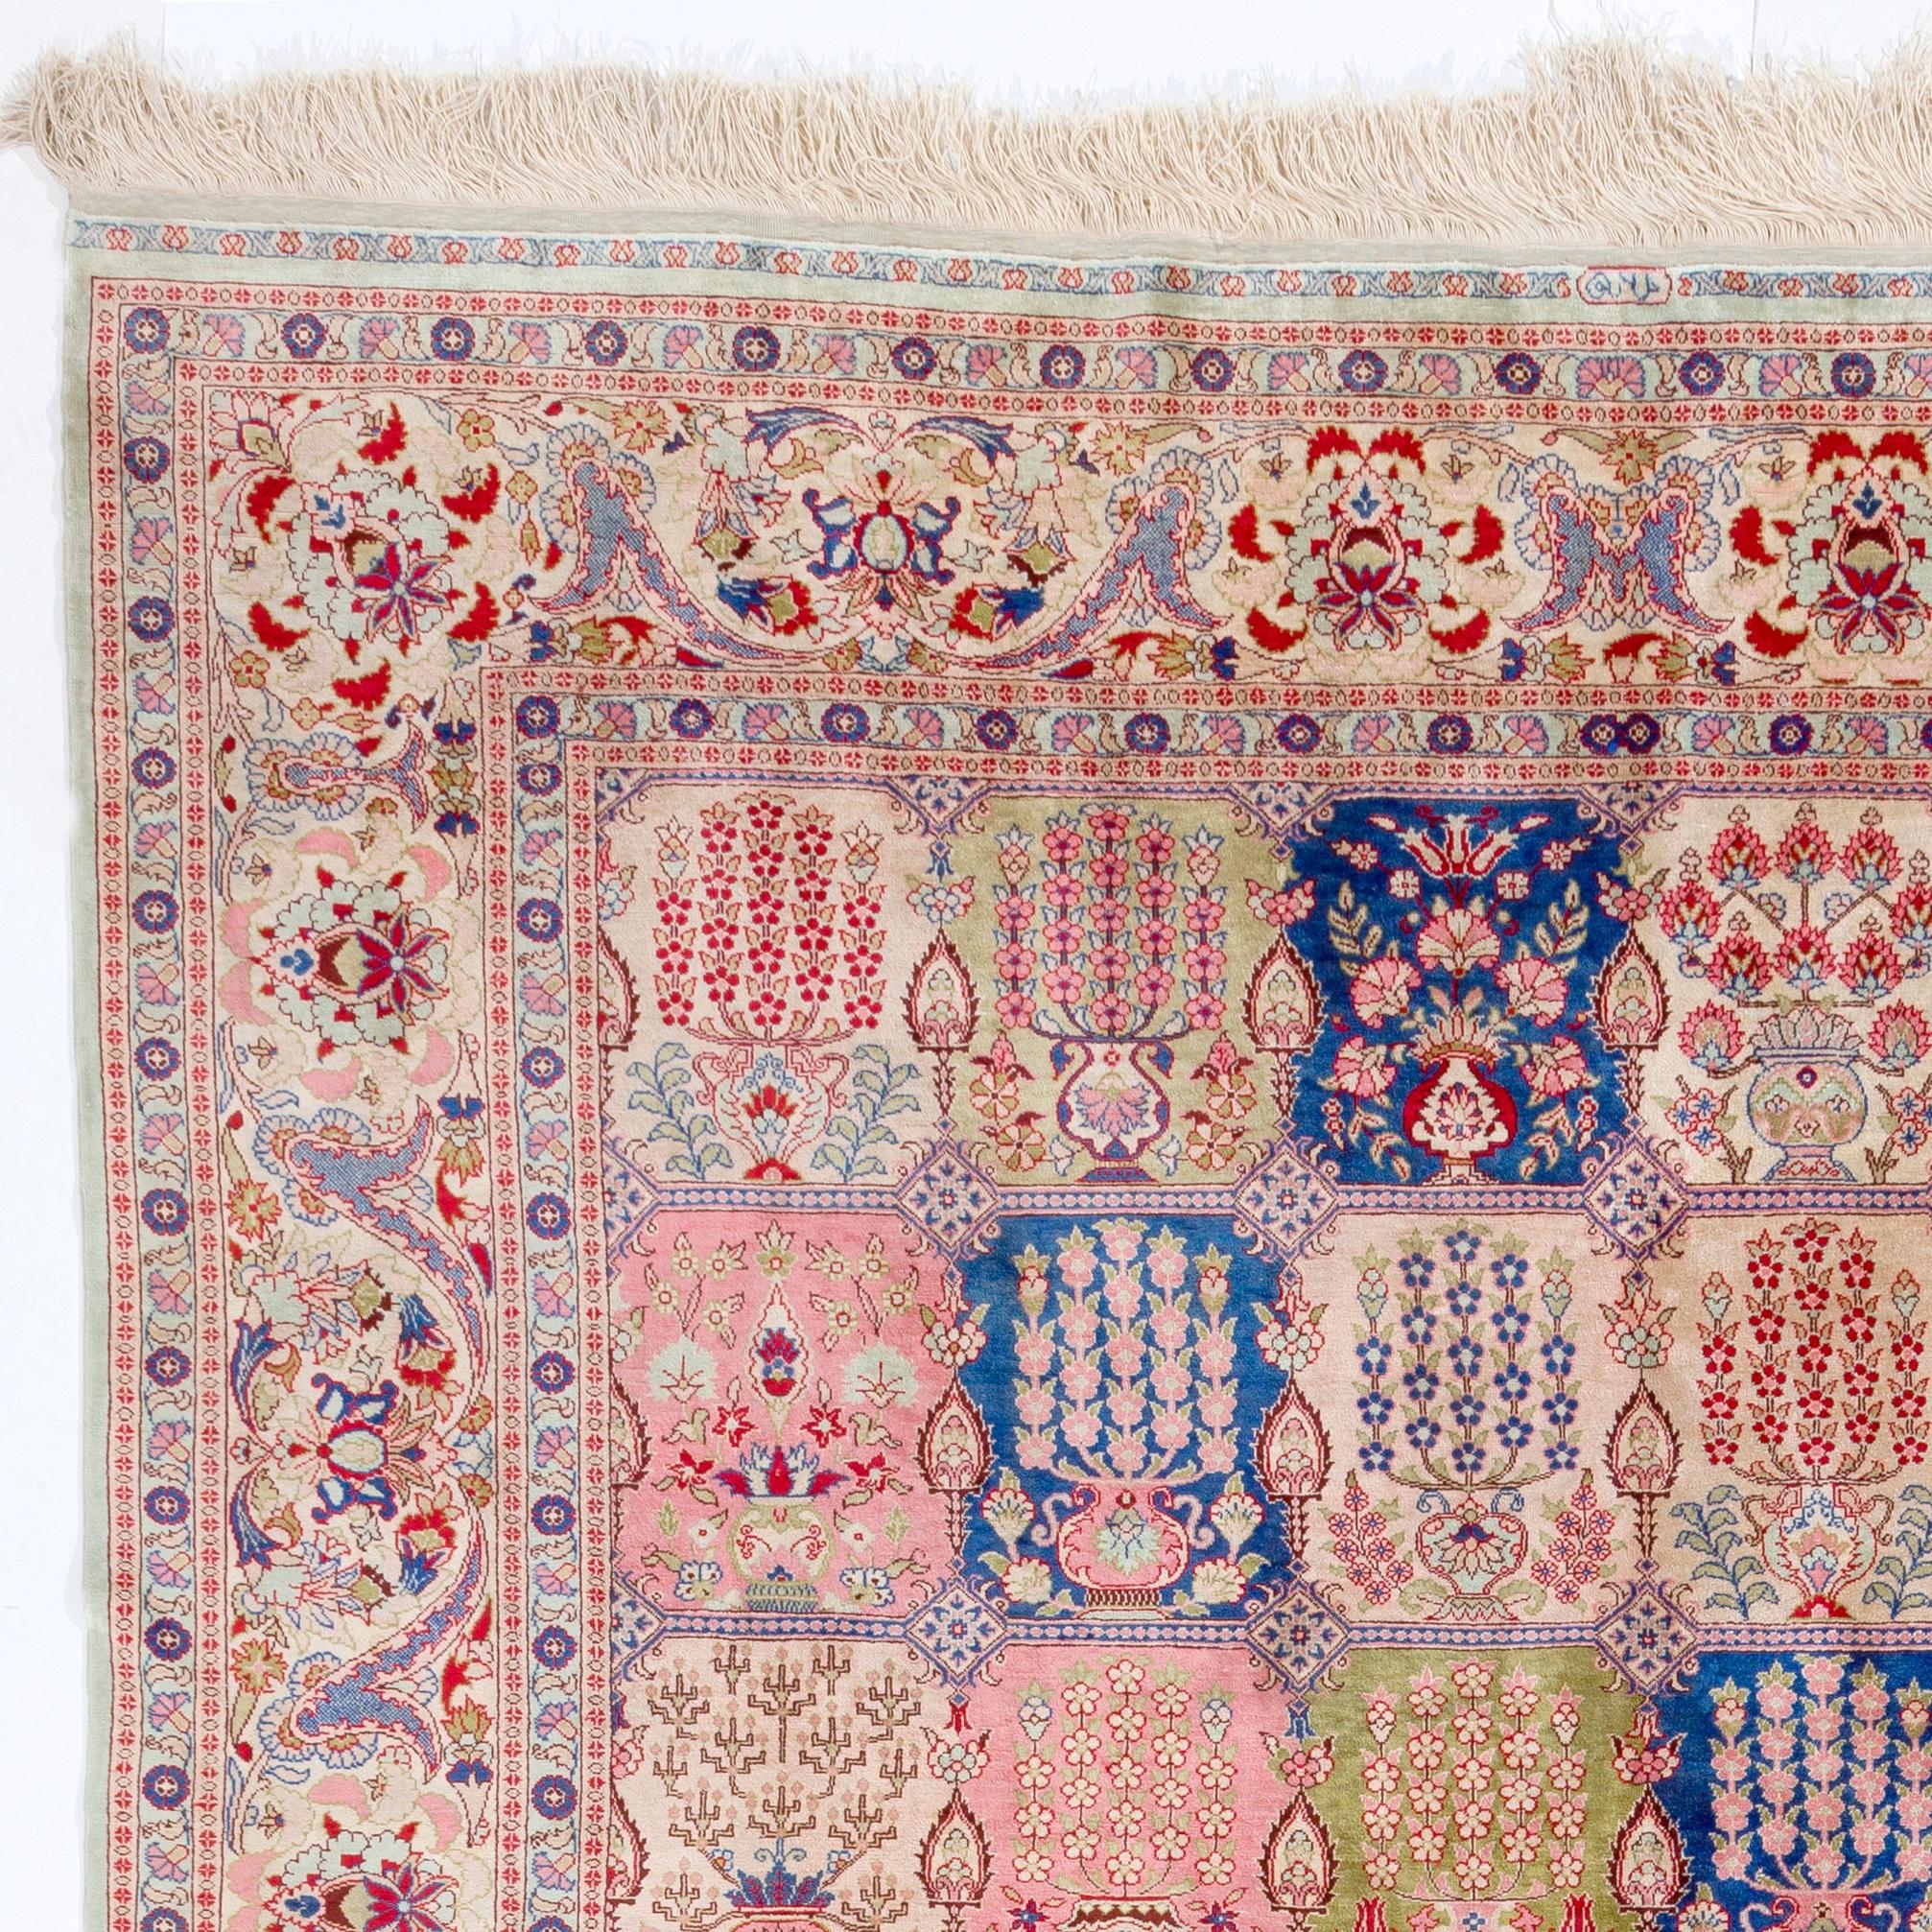 Ce tapis en soie Hereke, d'une élégance exquise, présente ce que l'on appelle un 